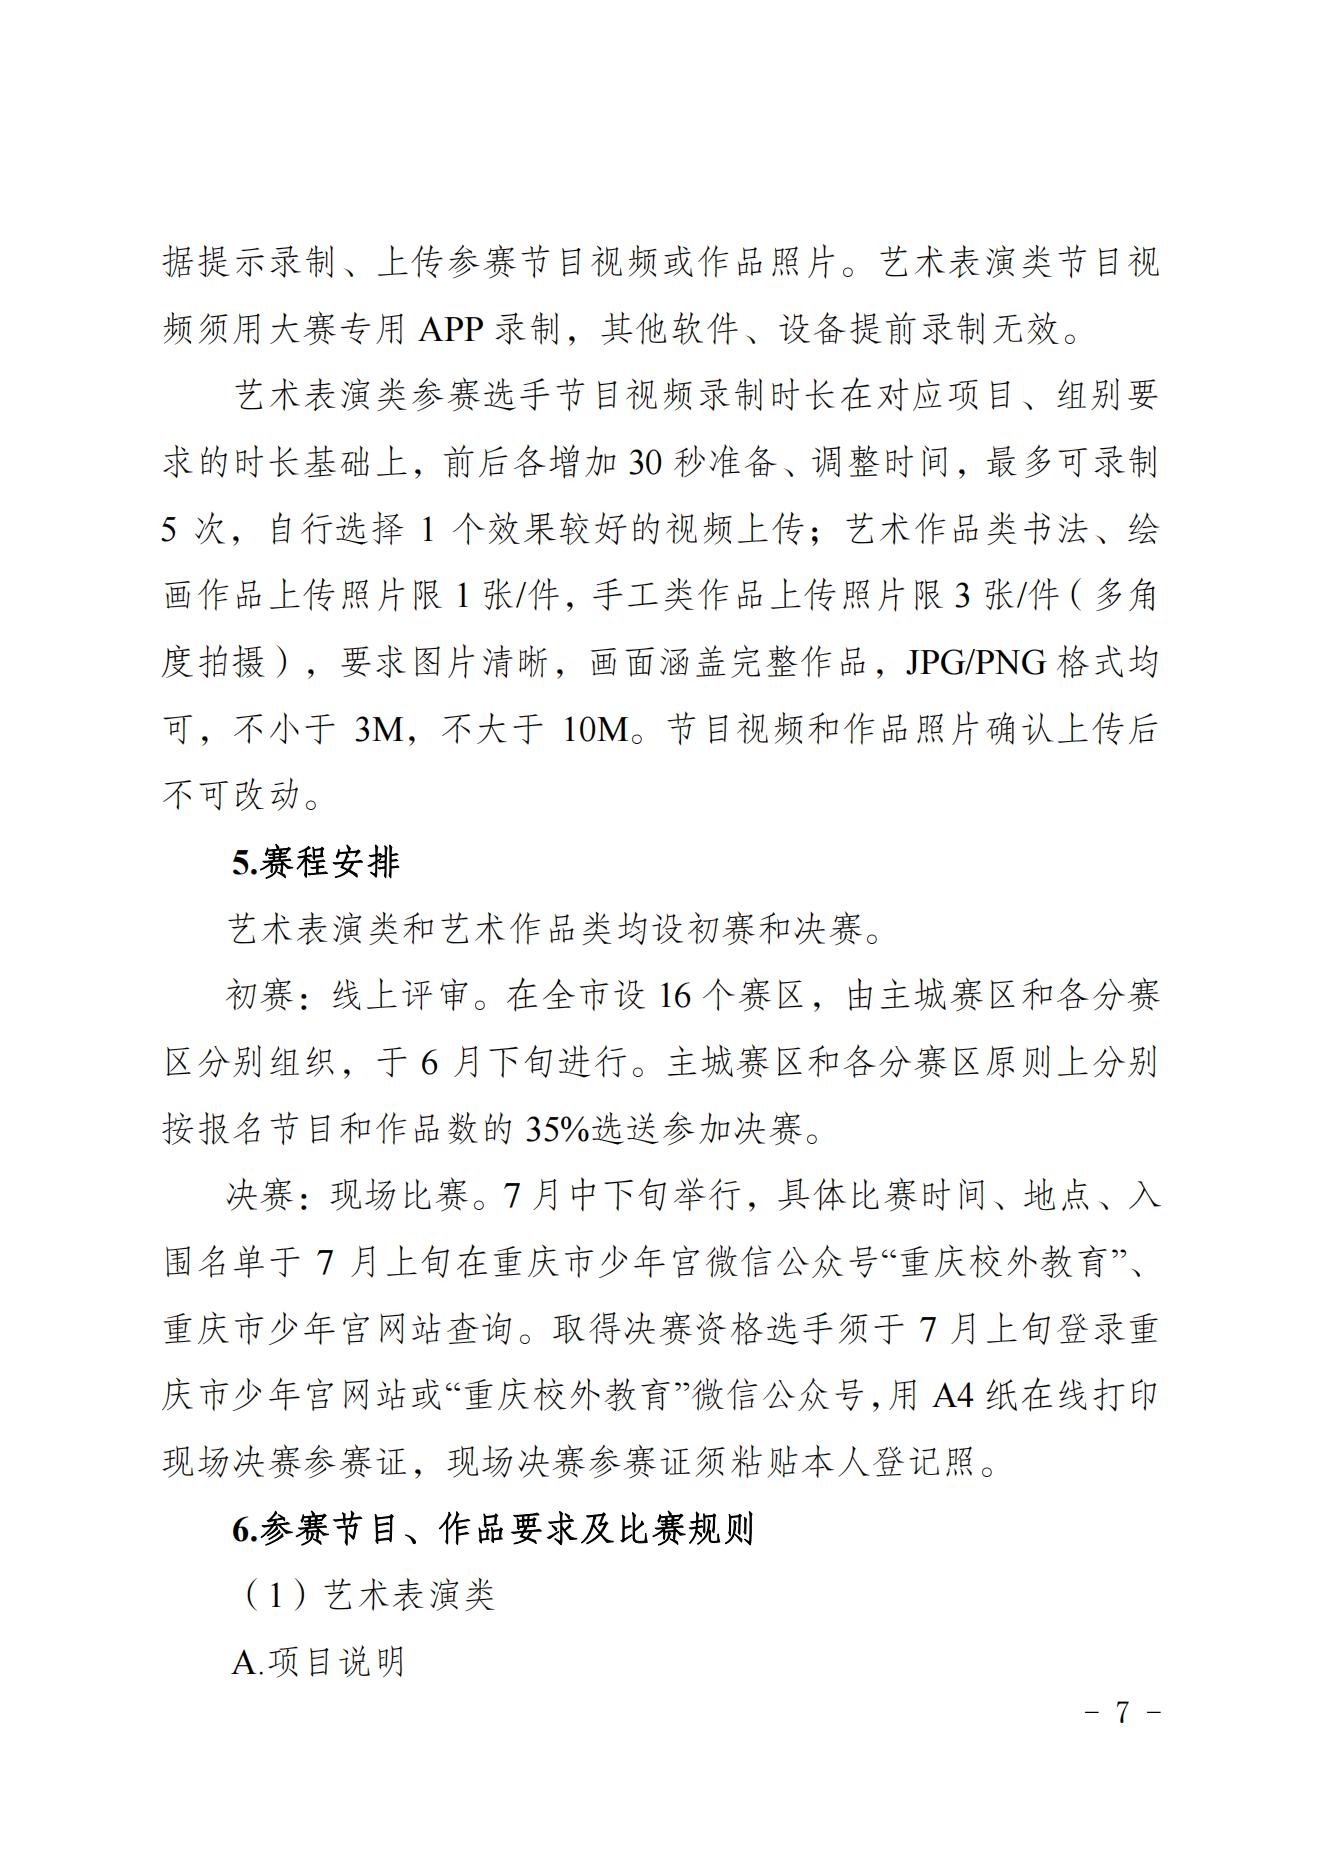 2022共青团重庆市委关于印发重庆市第十七届中小学生才艺大赛活动方案的通知 第7张